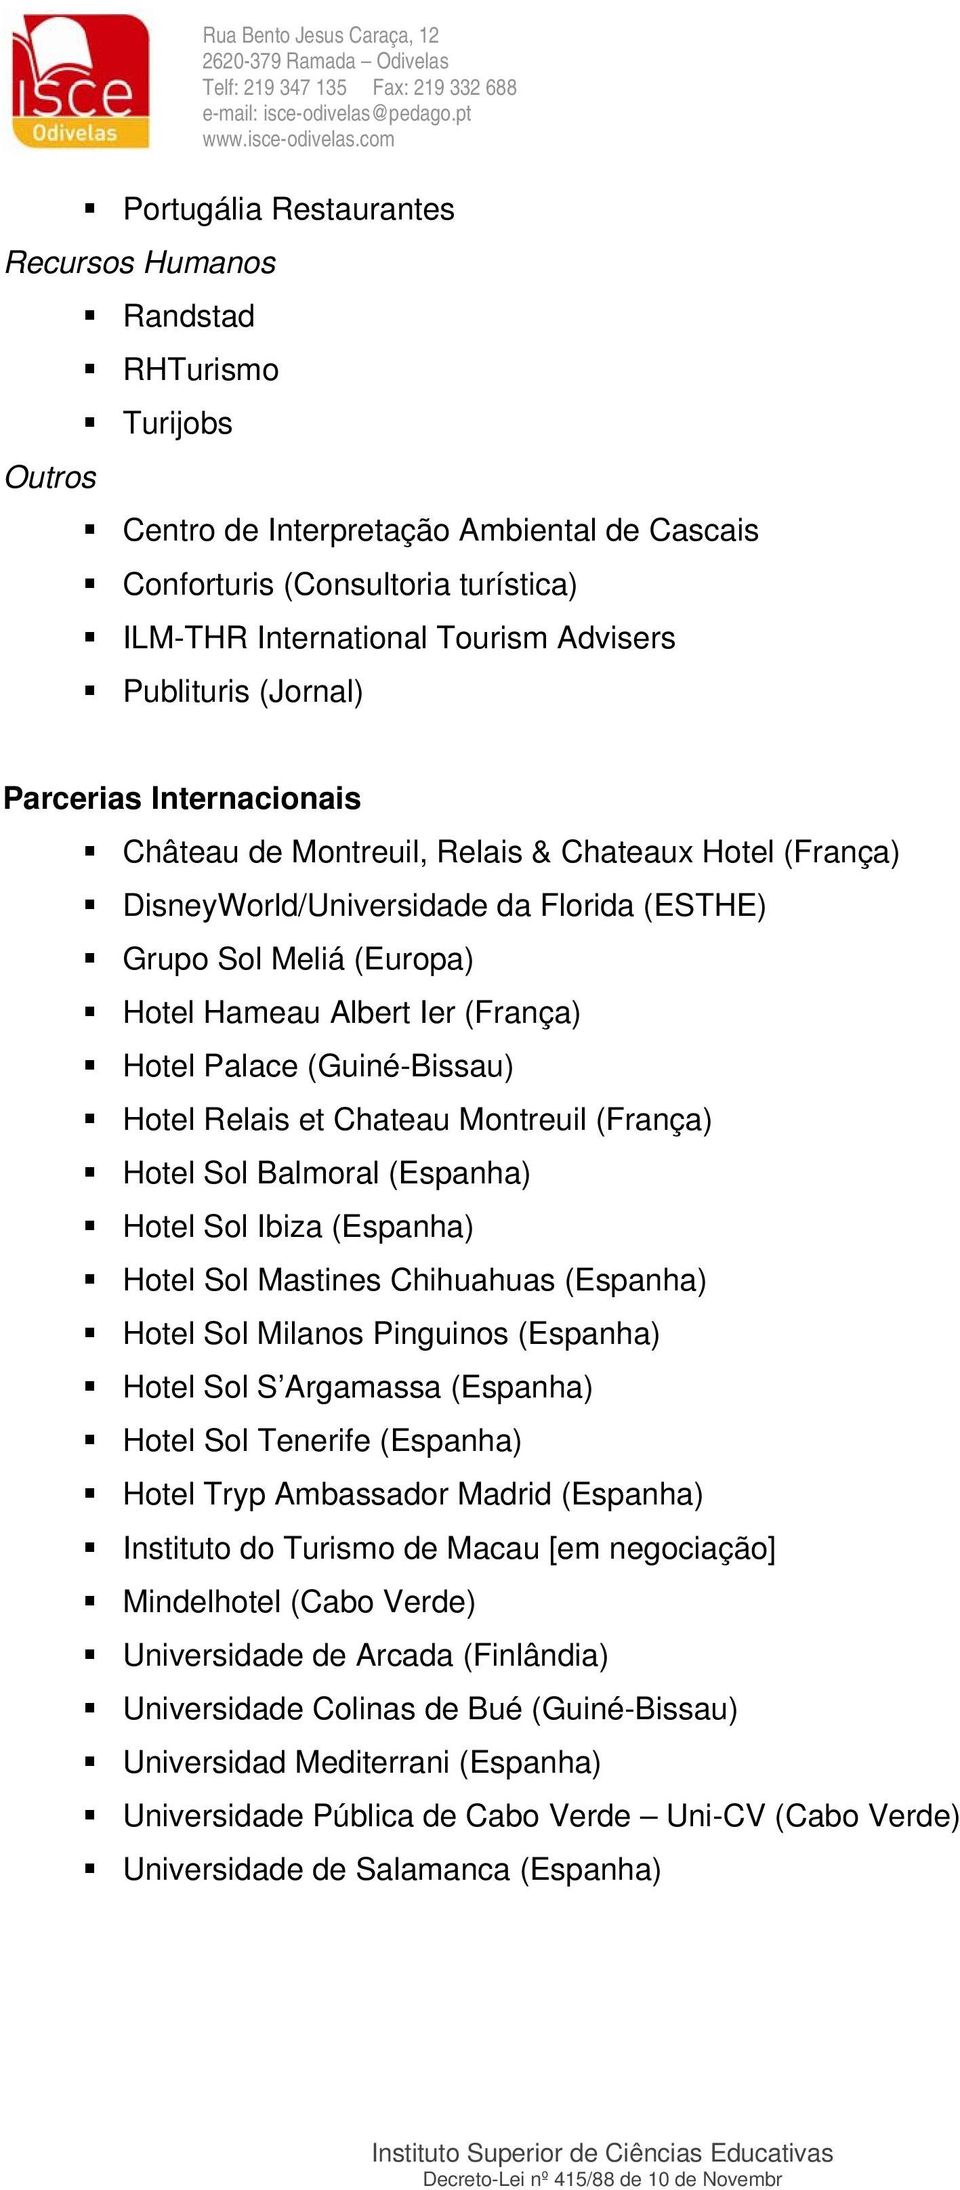 (França) Hotel Palace (Guiné-Bissau) Hotel Relais et Chateau Montreuil (França) Hotel Sol Balmoral (Espanha) Hotel Sol Ibiza (Espanha) Hotel Sol Mastines Chihuahuas (Espanha) Hotel Sol Milanos